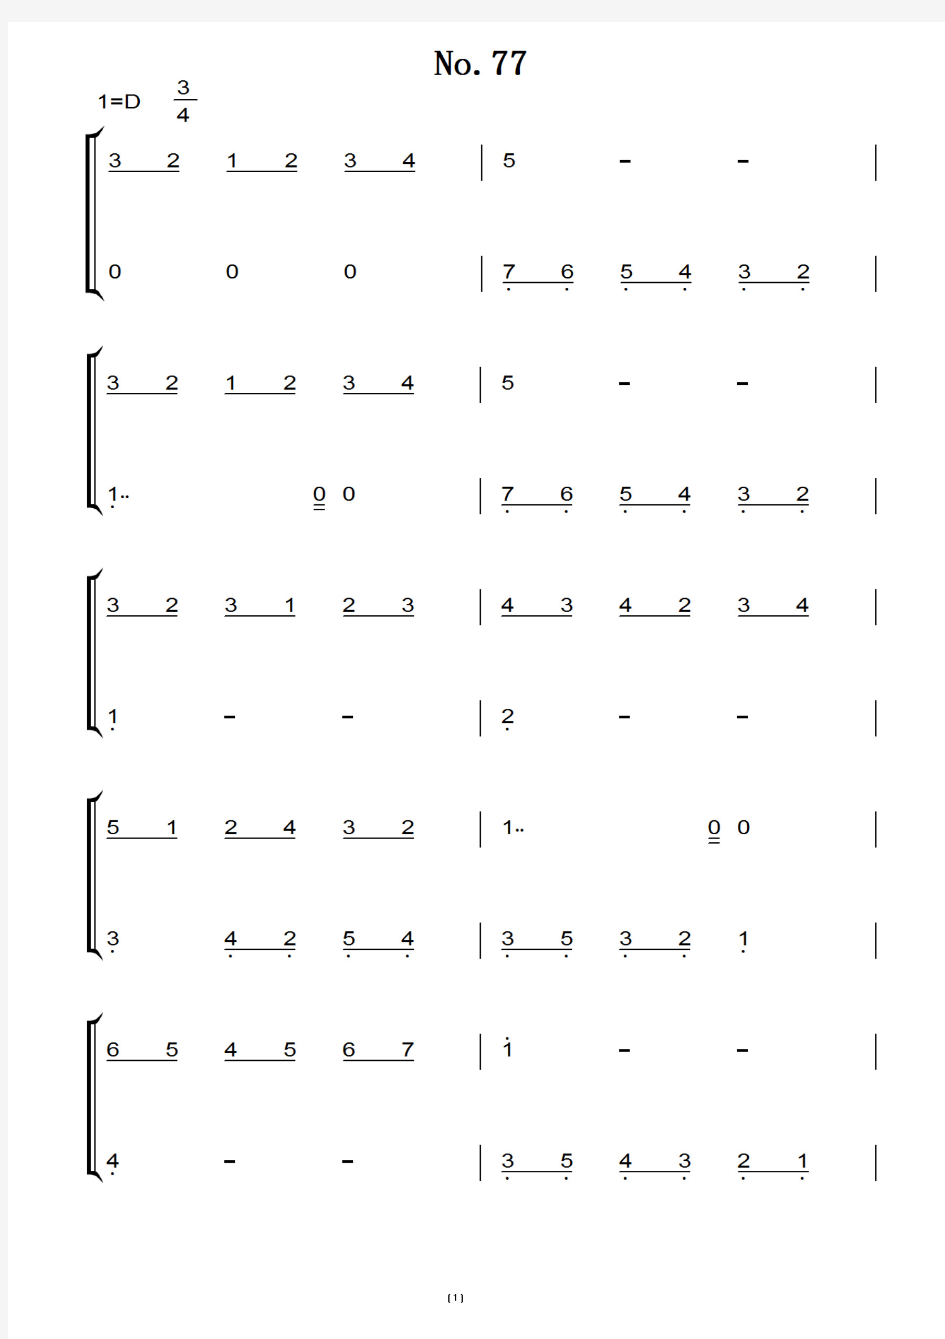 拜厄钢琴基础教程-No.77 首 钢琴双手简谱 练习曲 原版 钢琴谱 钢琴简谱.pdf